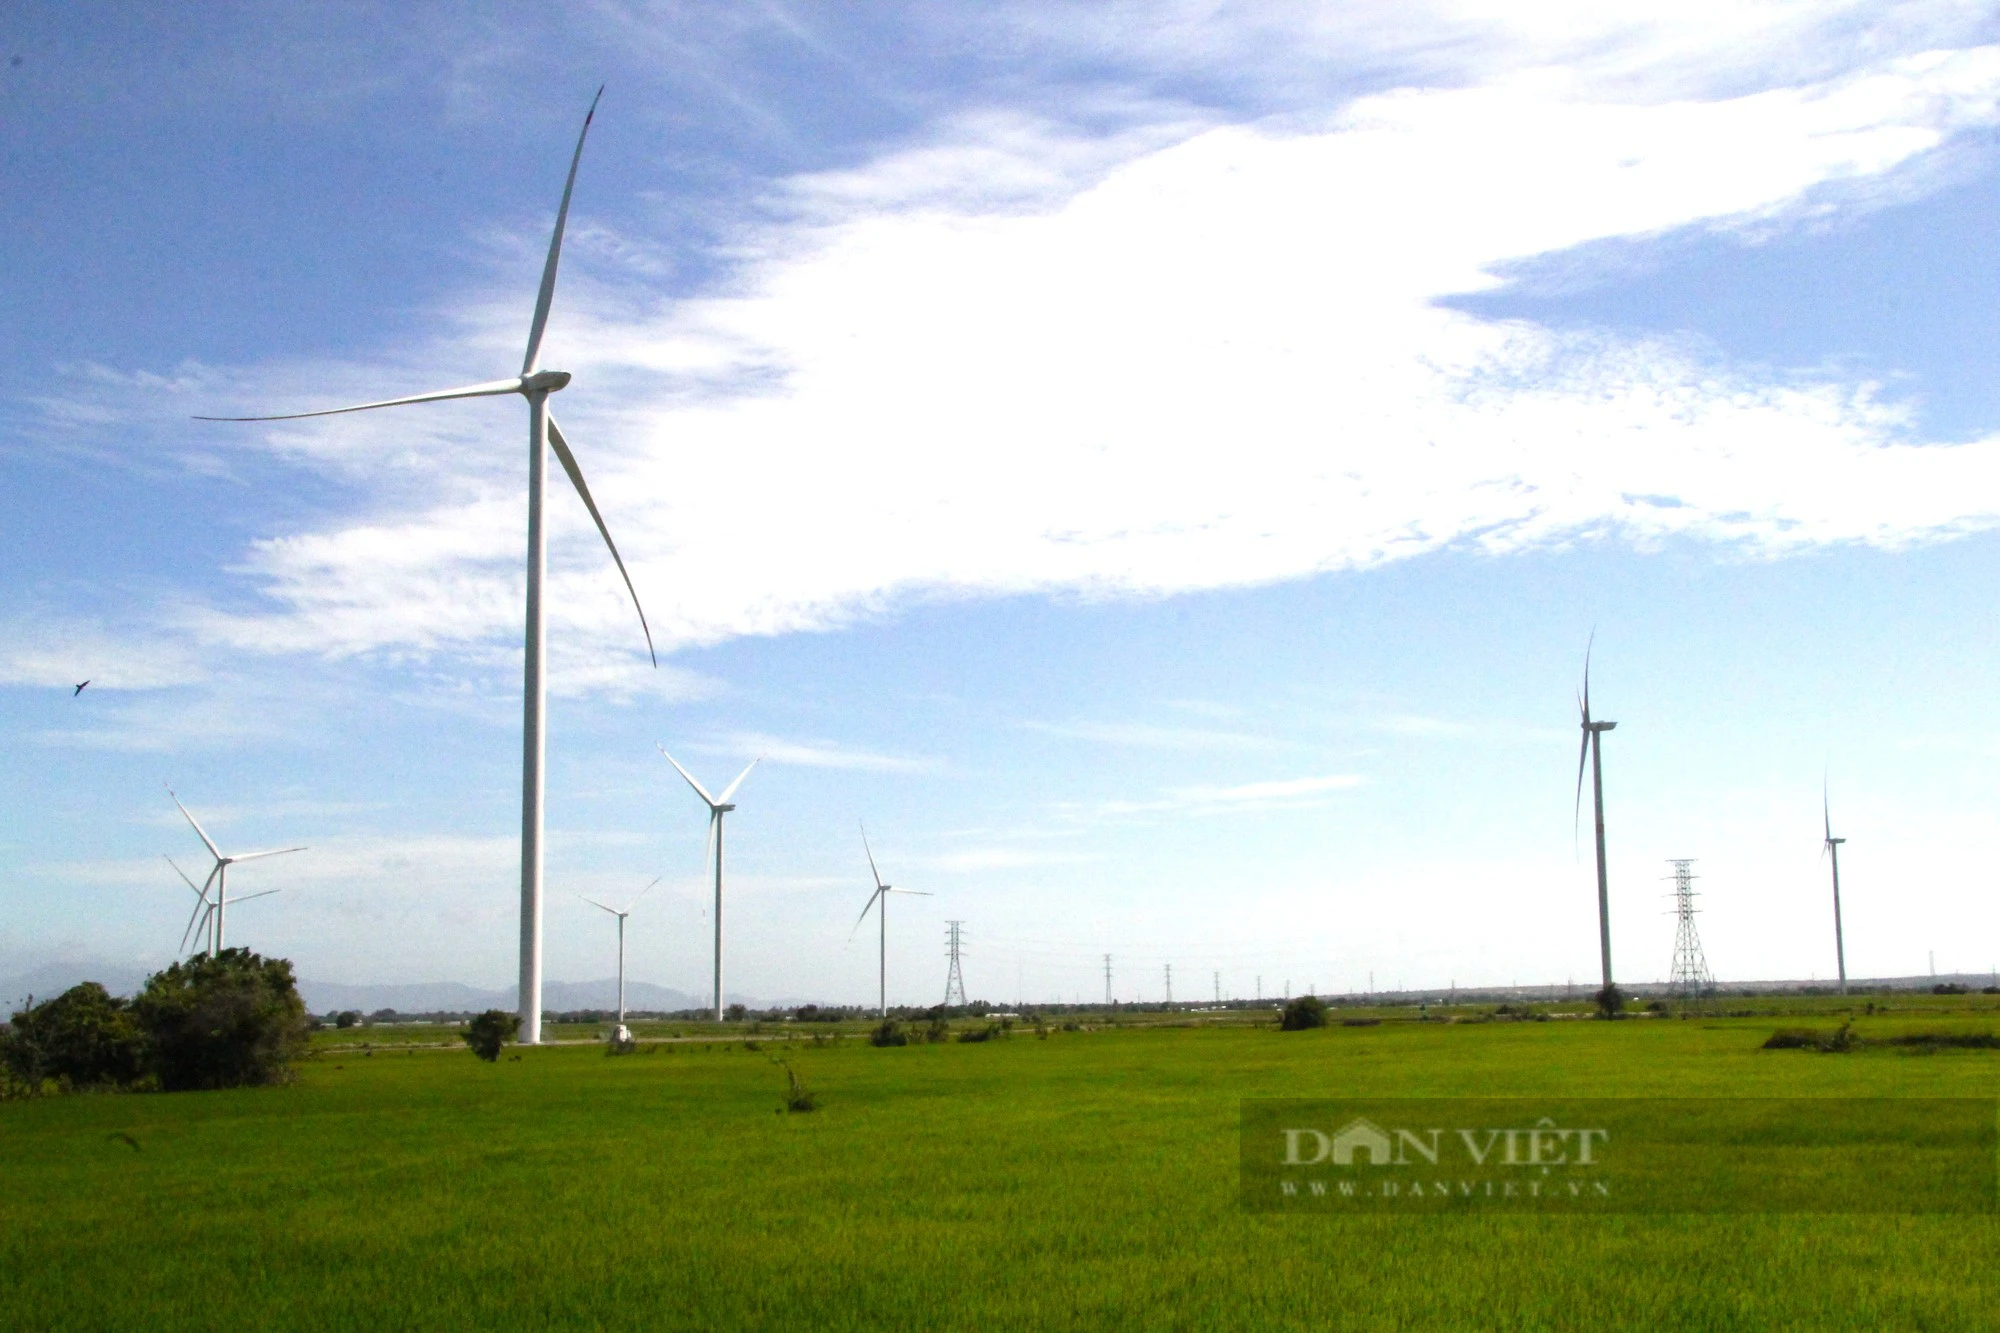 Nhiều sai phạm cho thuê đất tại dự án nhà máy điện gió Phước Hữu – Duyên Hải 1 ở tỉnh Ninh Thuận - Ảnh 1.